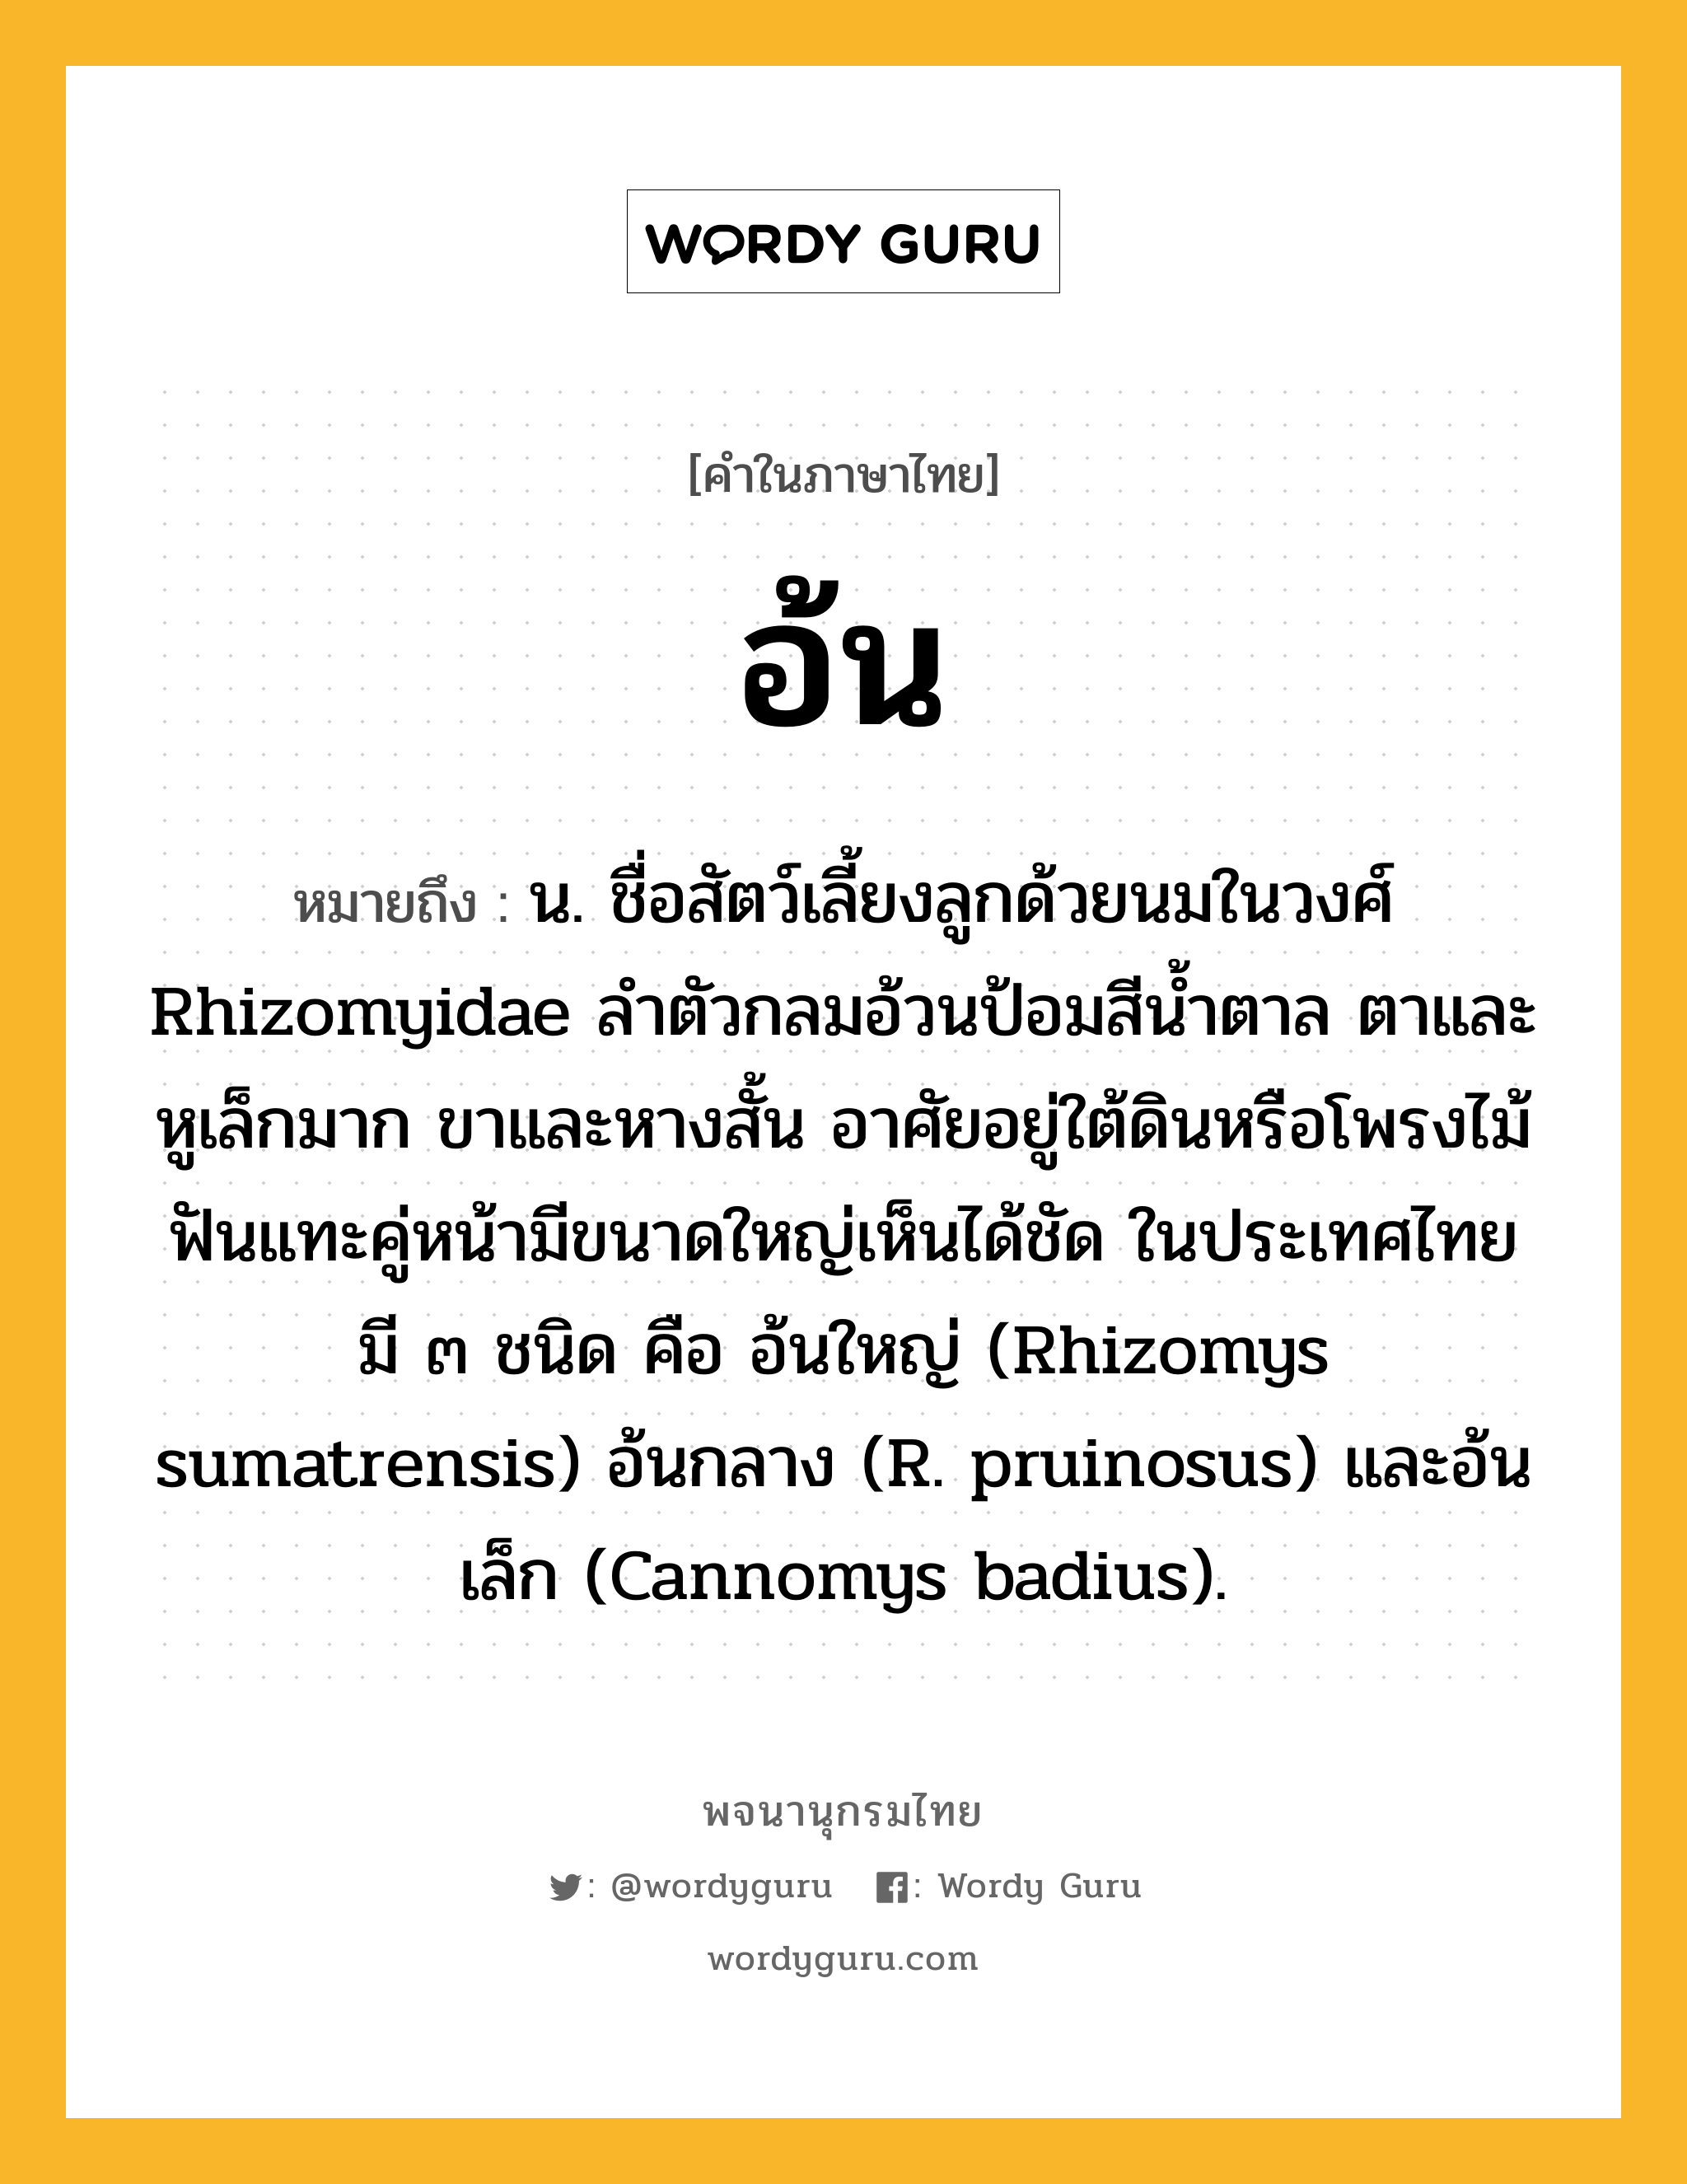 อ้น ความหมาย หมายถึงอะไร?, คำในภาษาไทย อ้น หมายถึง น. ชื่อสัตว์เลี้ยงลูกด้วยนมในวงศ์ Rhizomyidae ลําตัวกลมอ้วนป้อมสีนํ้าตาล ตาและหูเล็กมาก ขาและหางสั้น อาศัยอยู่ใต้ดินหรือโพรงไม้ ฟันแทะคู่หน้ามีขนาดใหญ่เห็นได้ชัด ในประเทศไทยมี ๓ ชนิด คือ อ้นใหญ่ (Rhizomys sumatrensis) อ้นกลาง (R. pruinosus) และอ้นเล็ก (Cannomys badius).